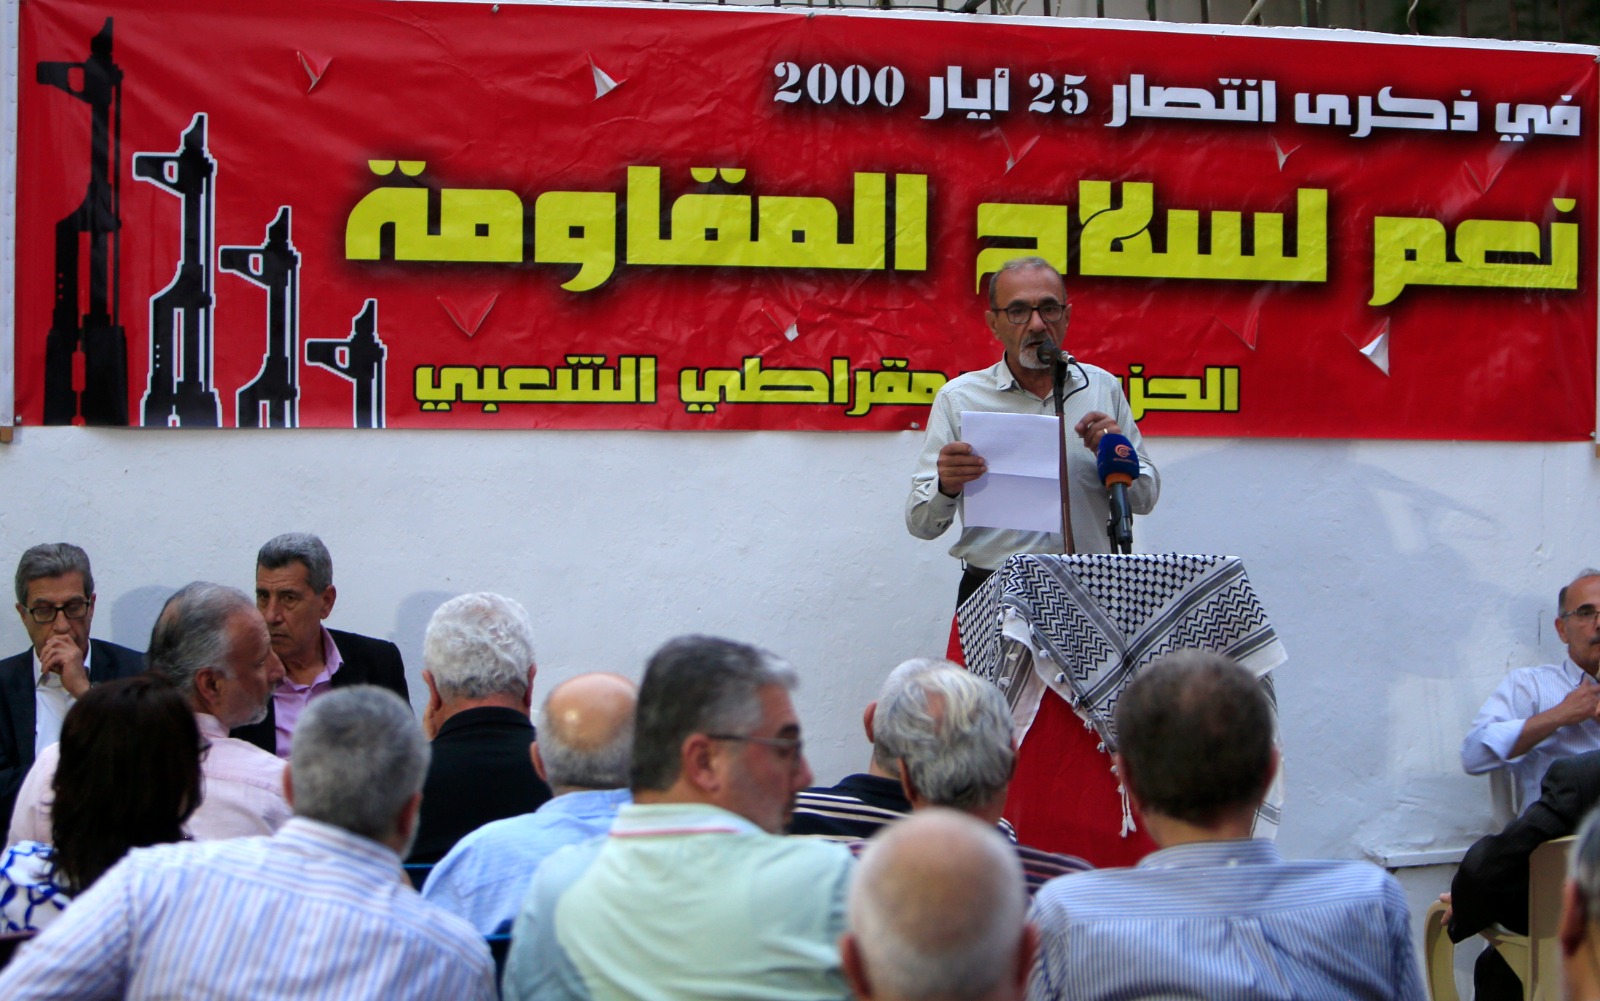 احتفال للحزب الديمقراطي الشعبي بذكرى التحرير في صيدا